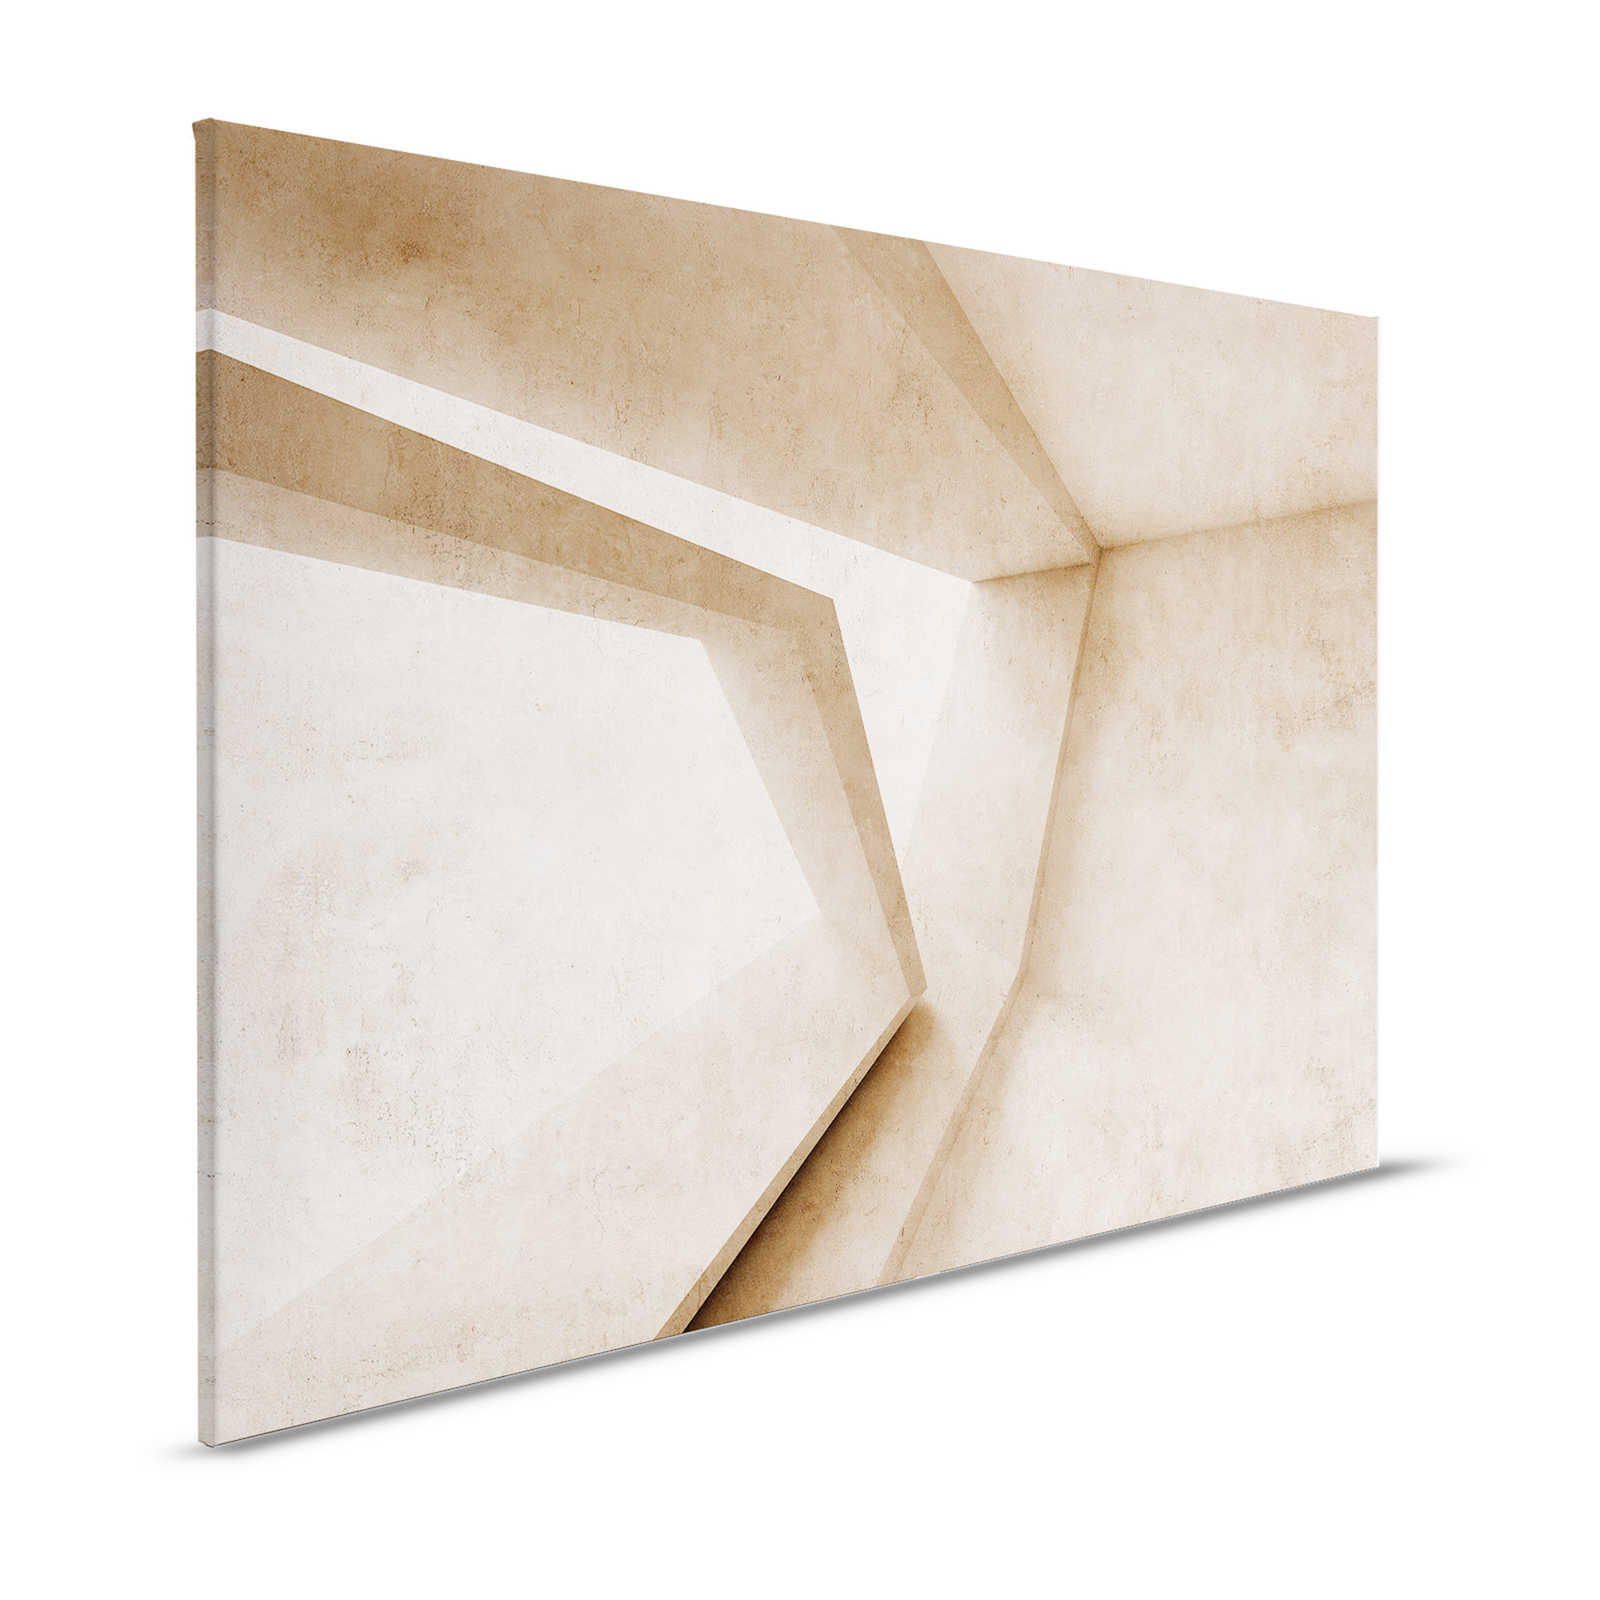 Futura 1 - Concrete Canvas Painting 3D Pattern - 1.20 m x 0.80 m
